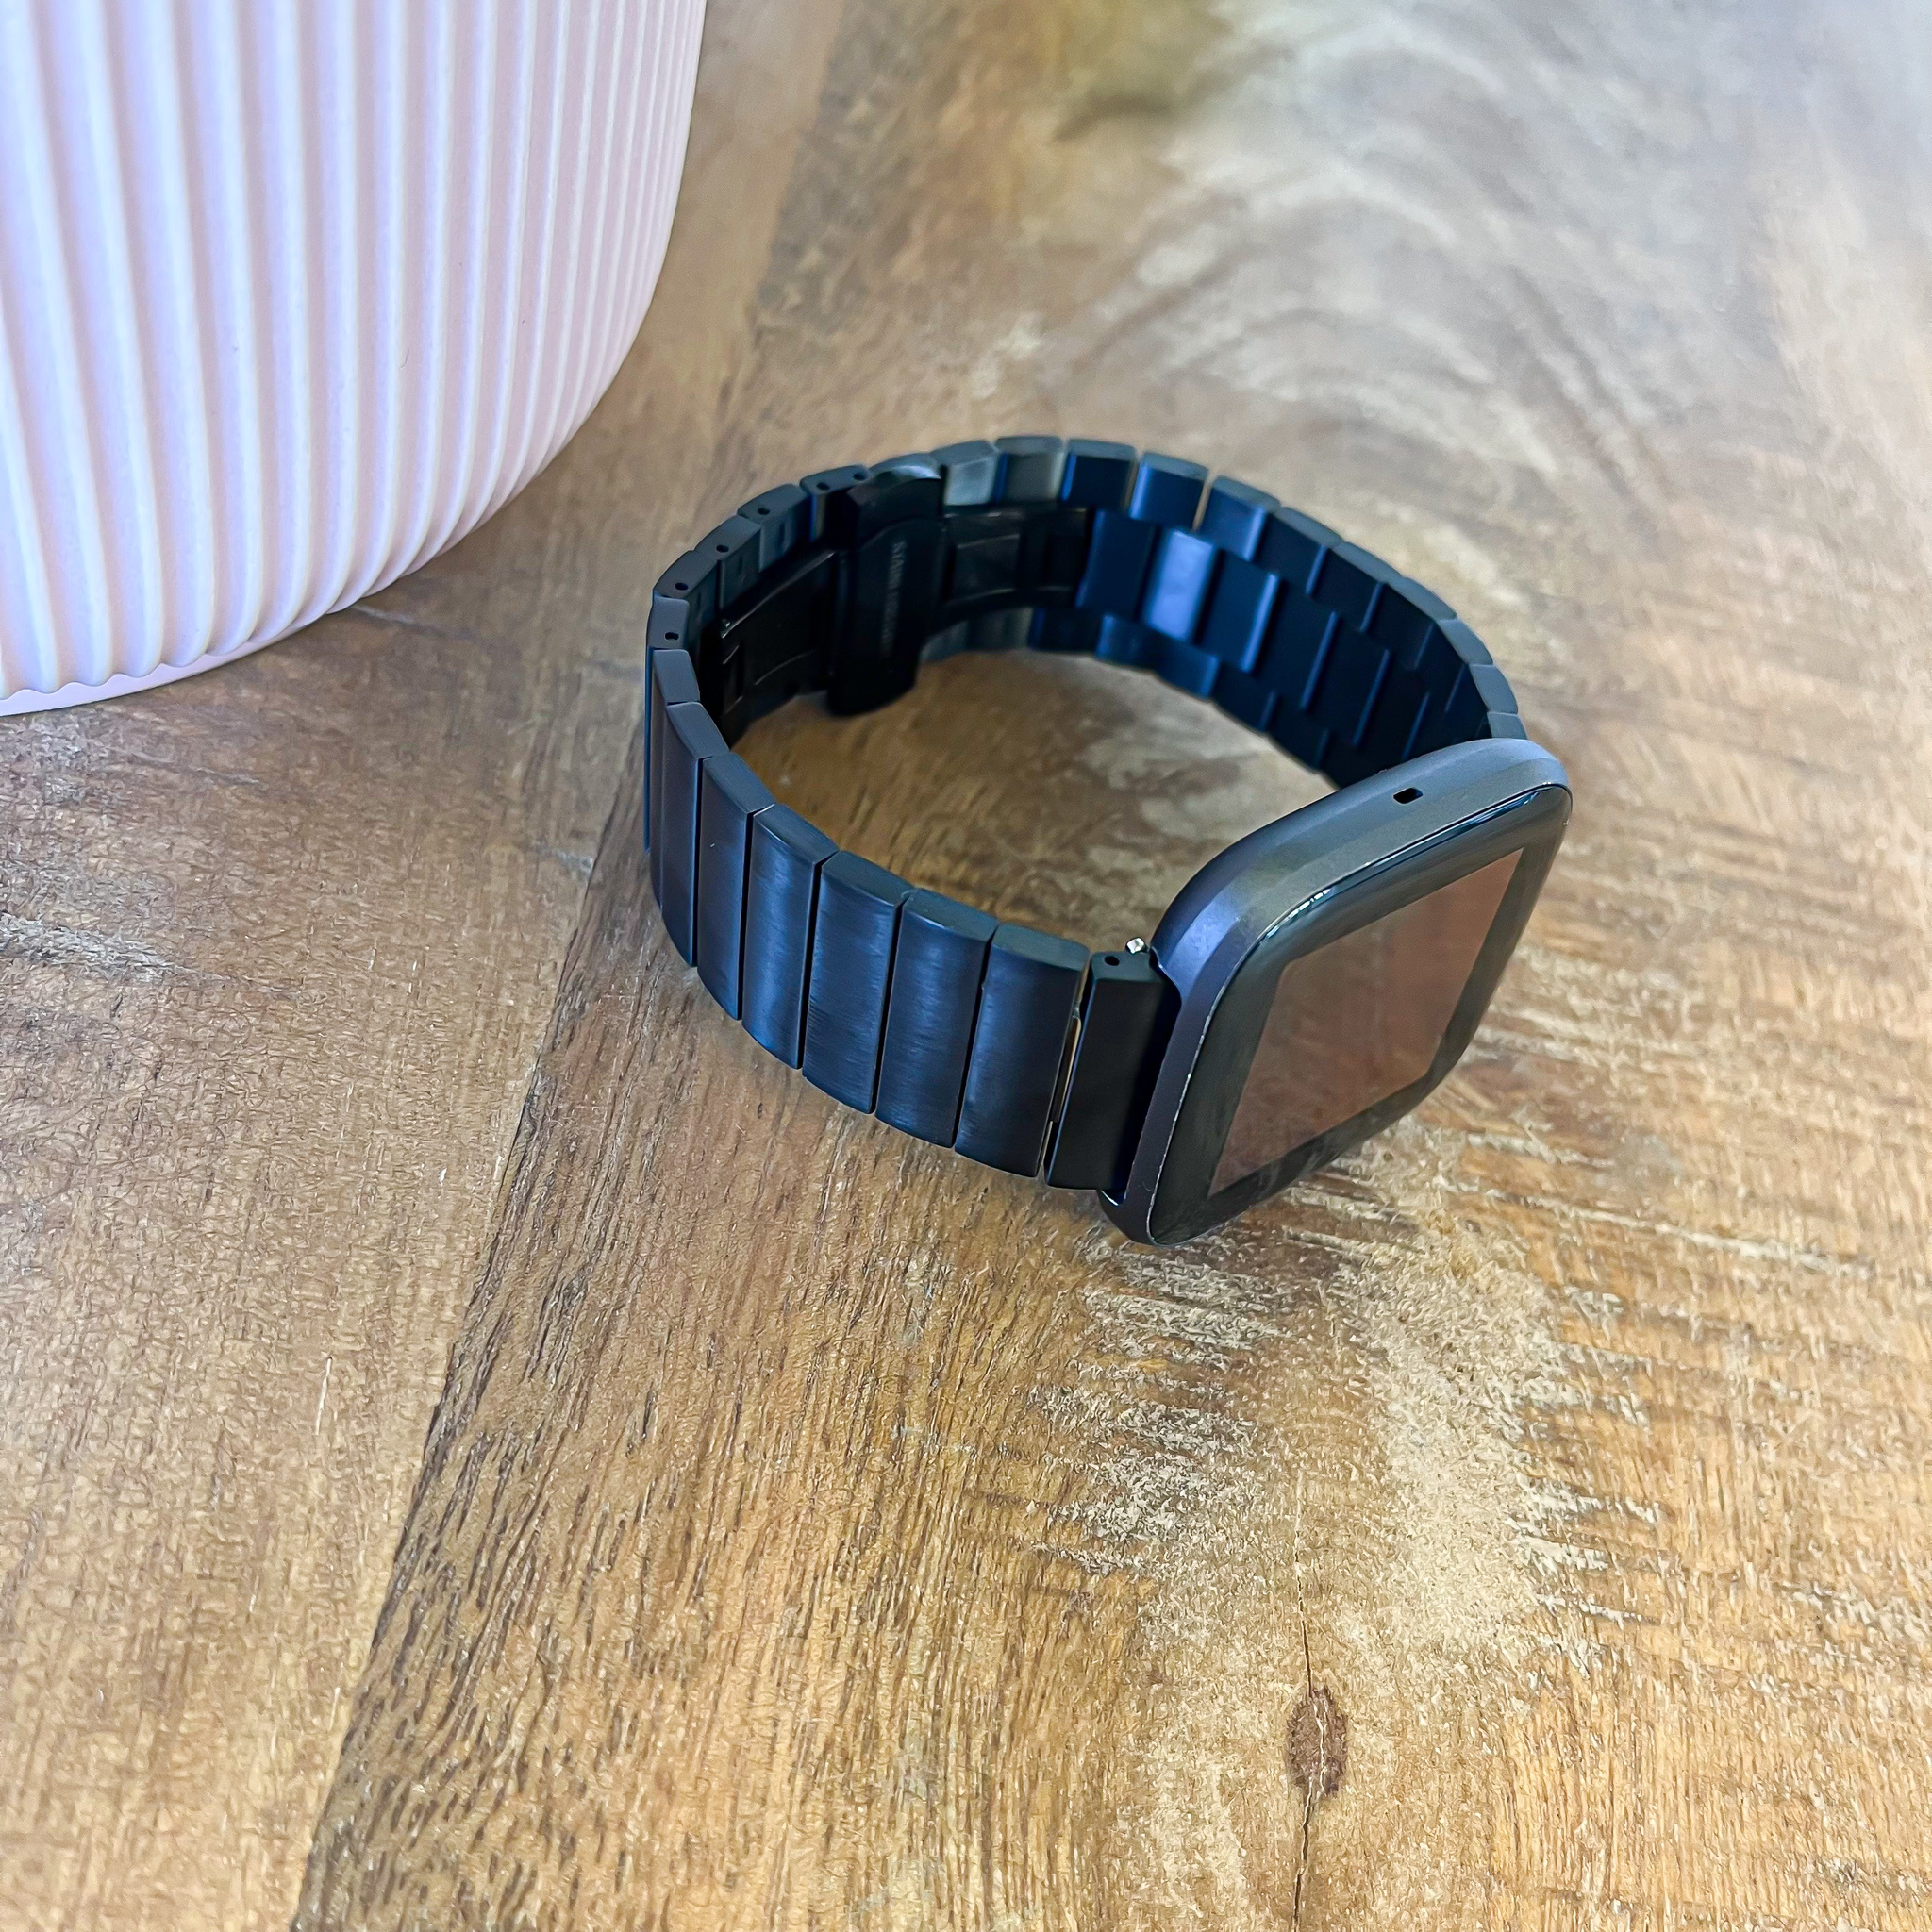 Bracelet acier maillons Fitbit Versa - noir